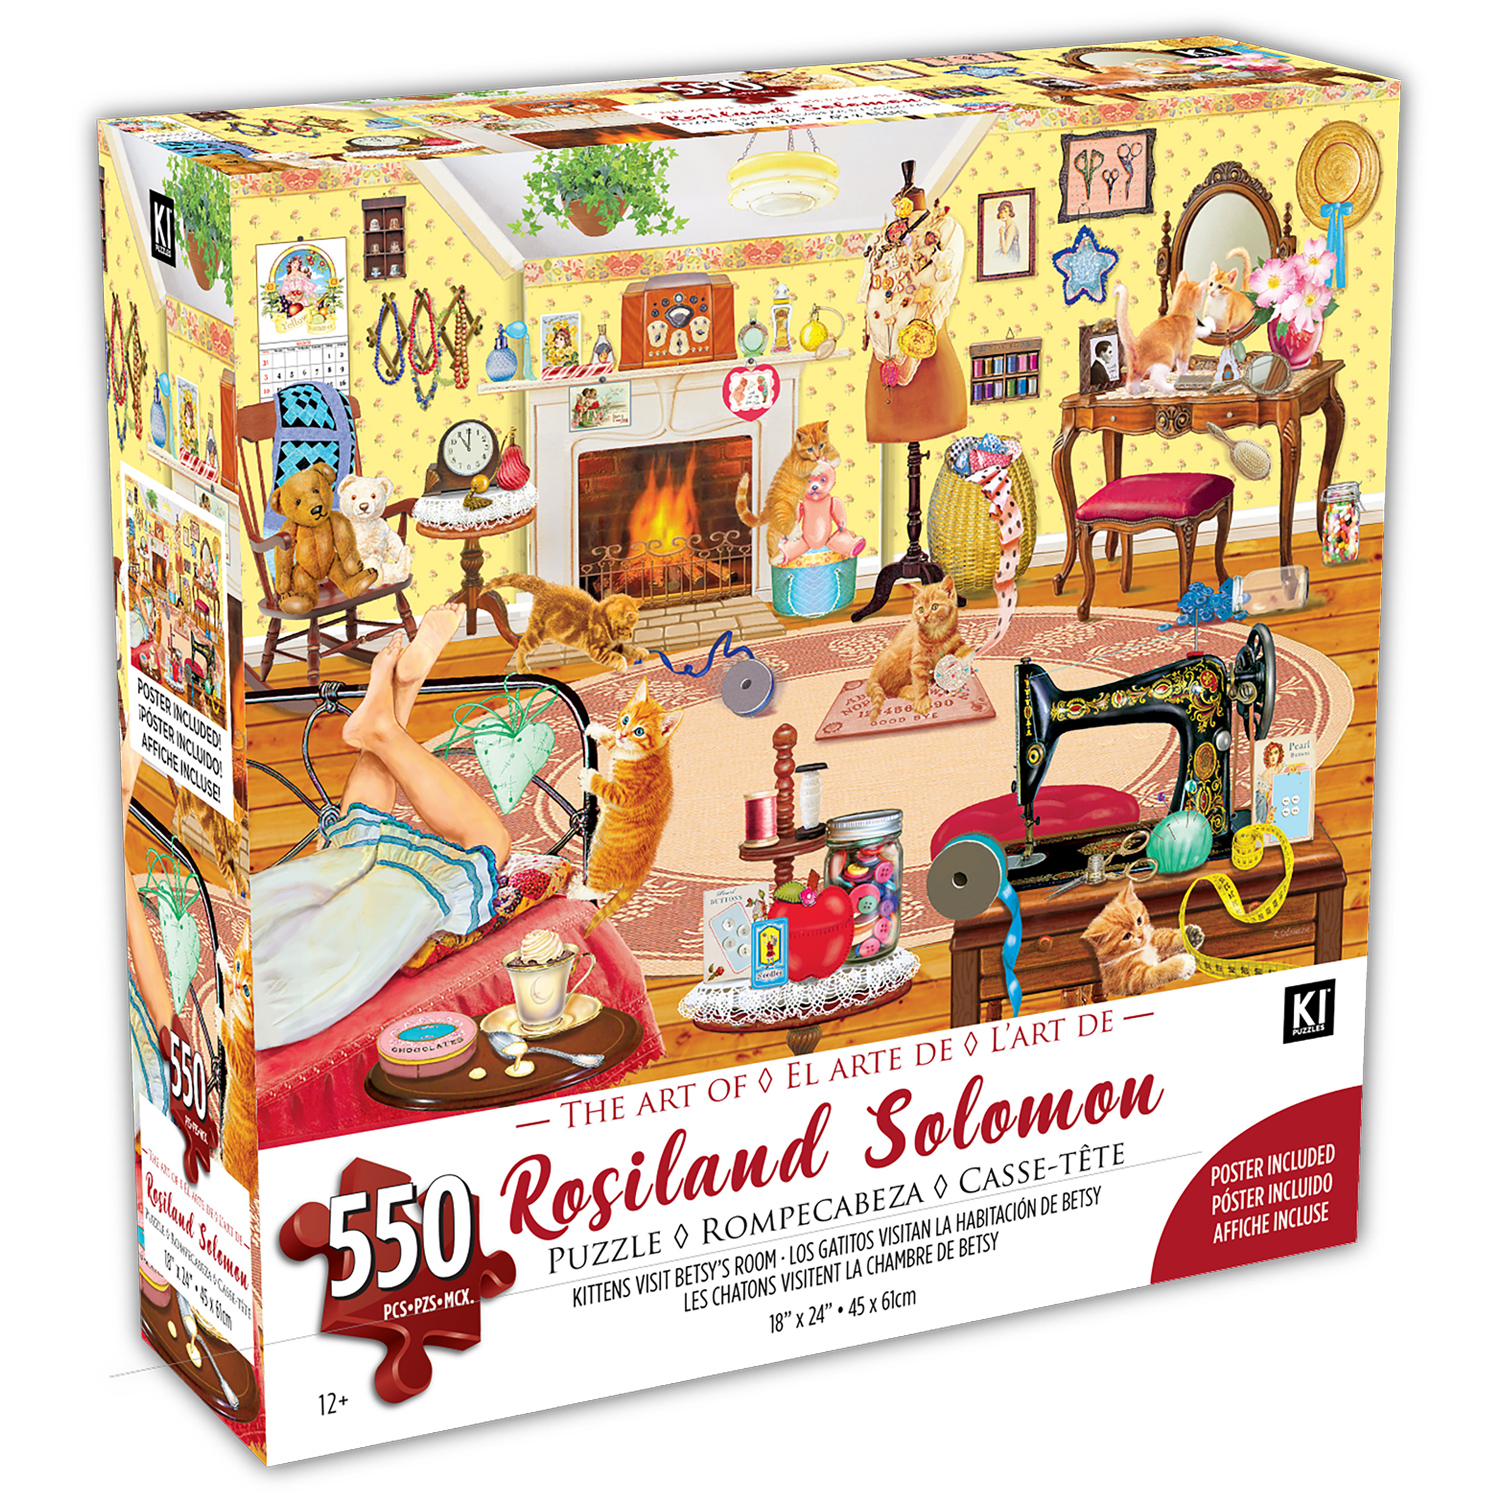 KI - Puzzle, Rosiland Solomon, Kittens visit Betsy's room, 550 pcs